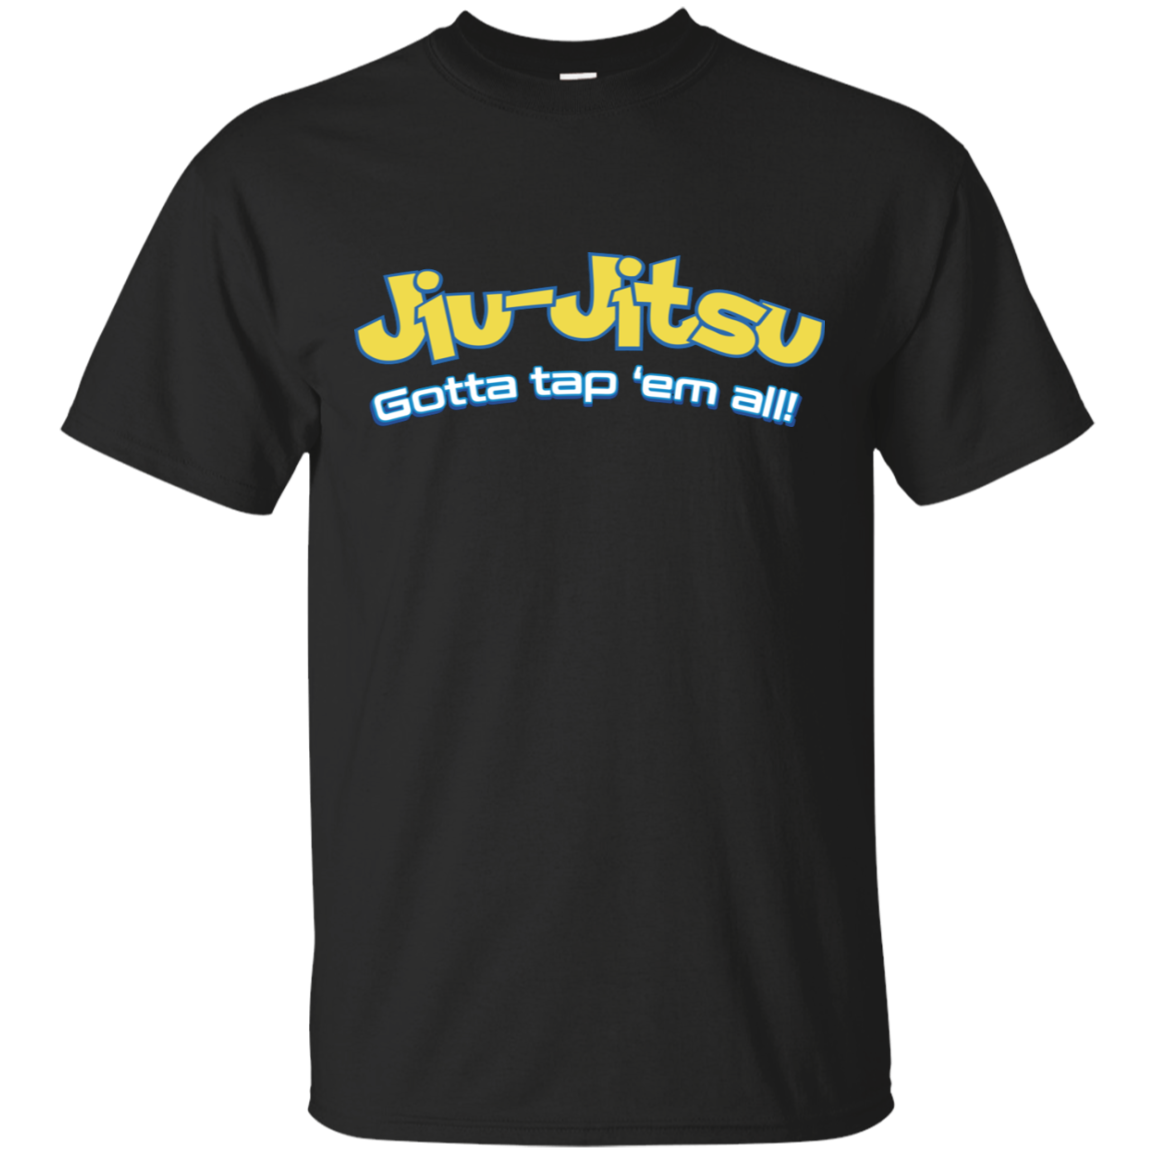 Brazilian Jiu-Jitsu BJJ Brazilian Jiu Jitsu Shirt